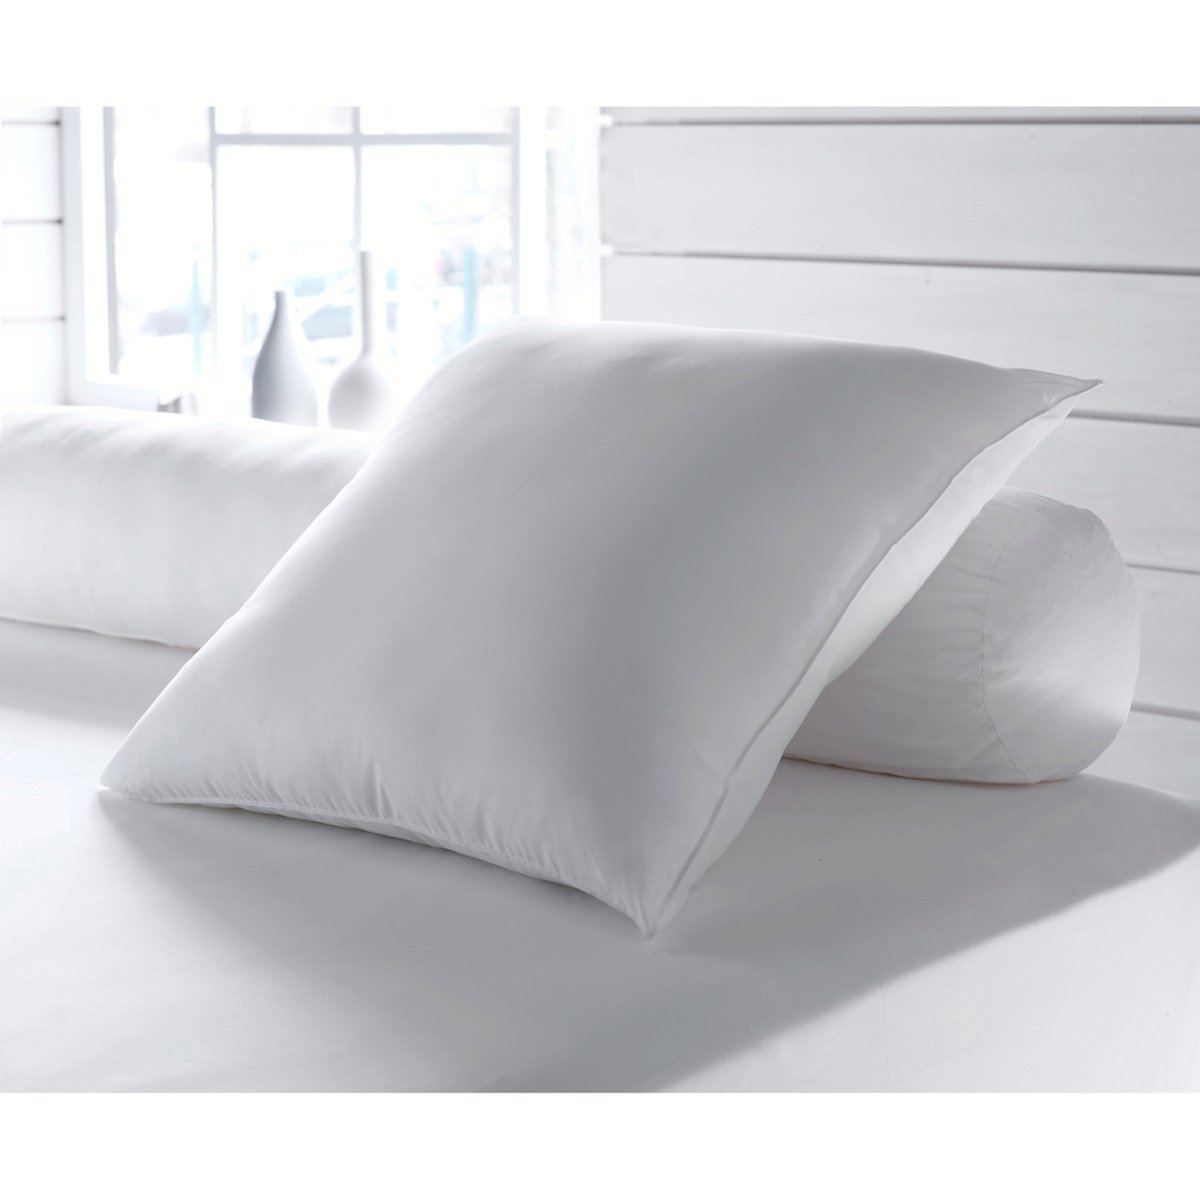 Одеяло La Redoute Экологичное с обработкой против клещей Proneem специально для летнего использования 140 x 200 см белый, размер 140 x 200 см - фото 2